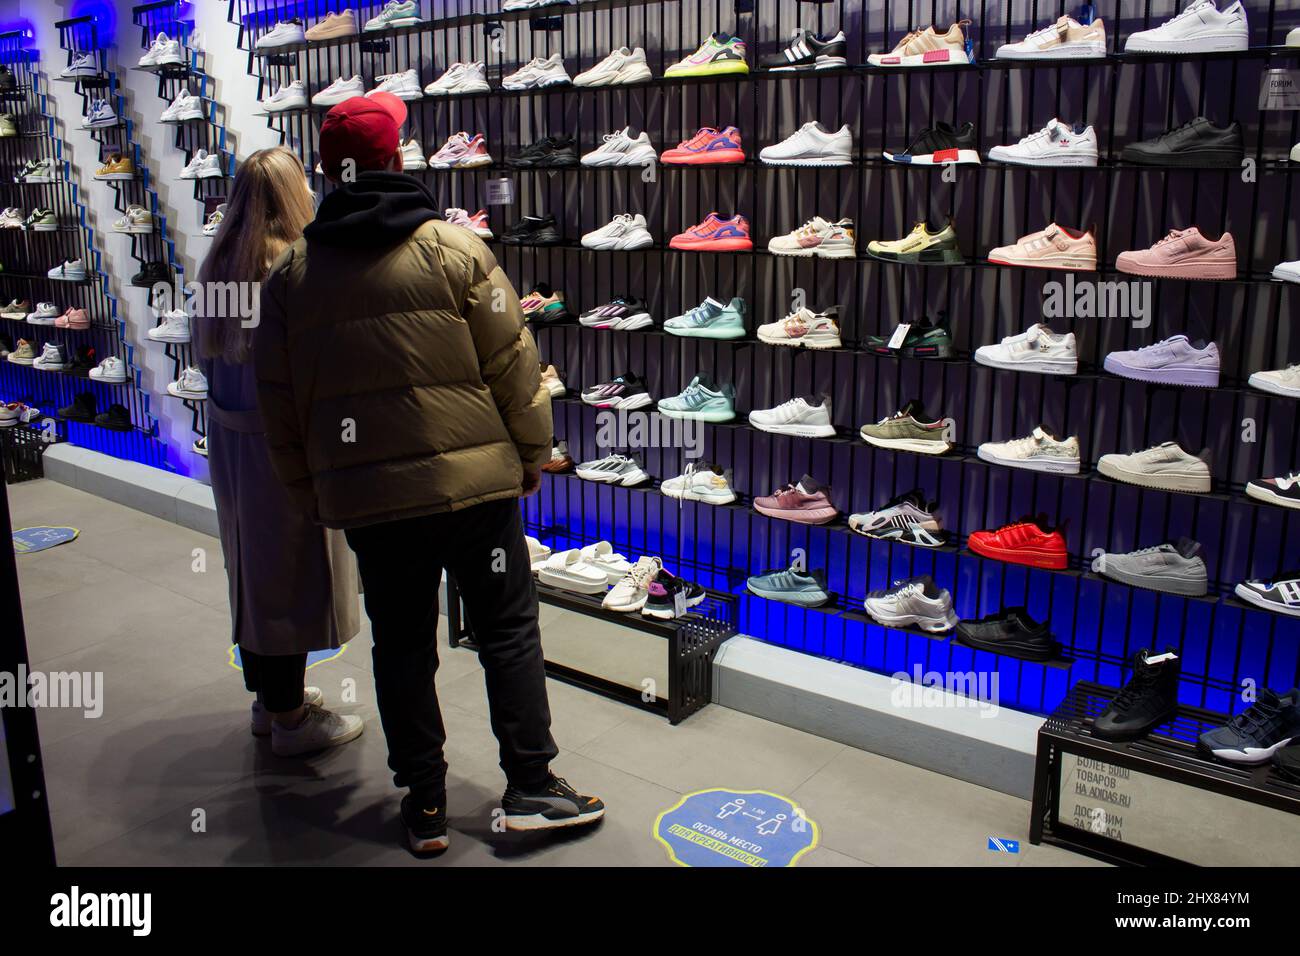 Les amateurs de shopping sélectionnent des baskets dans une boutique Adidas  à Moscou. Adidas devrait cesser toutes les ventes en ligne et hors ligne en  Russie d'ici le 13 mars 2022, à